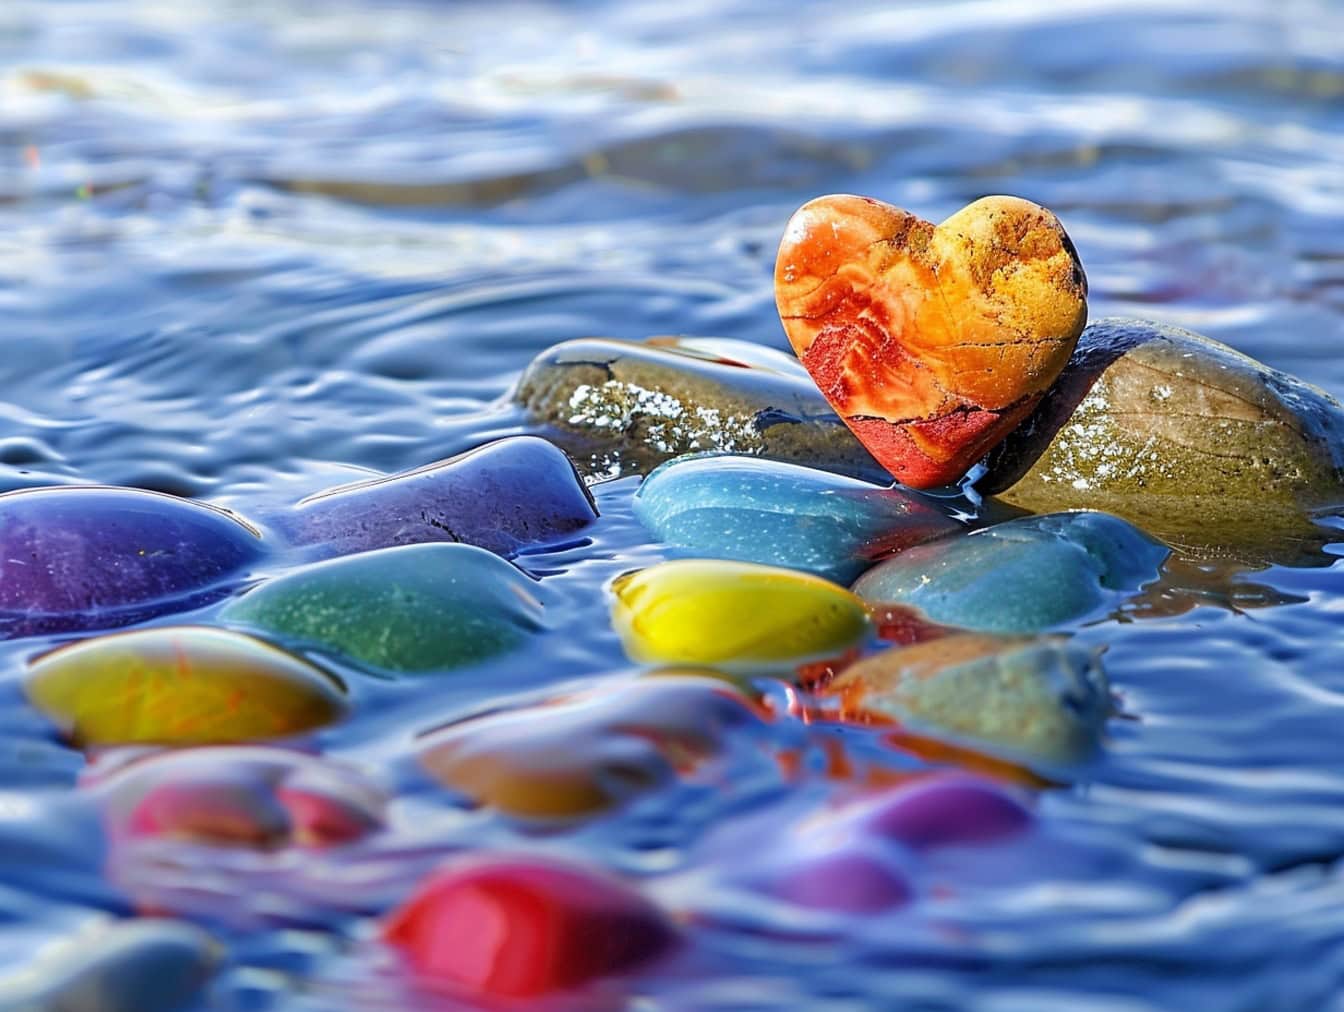 Pedra em forma de coração amarelo-alaranjado em outra pedra colorida na água